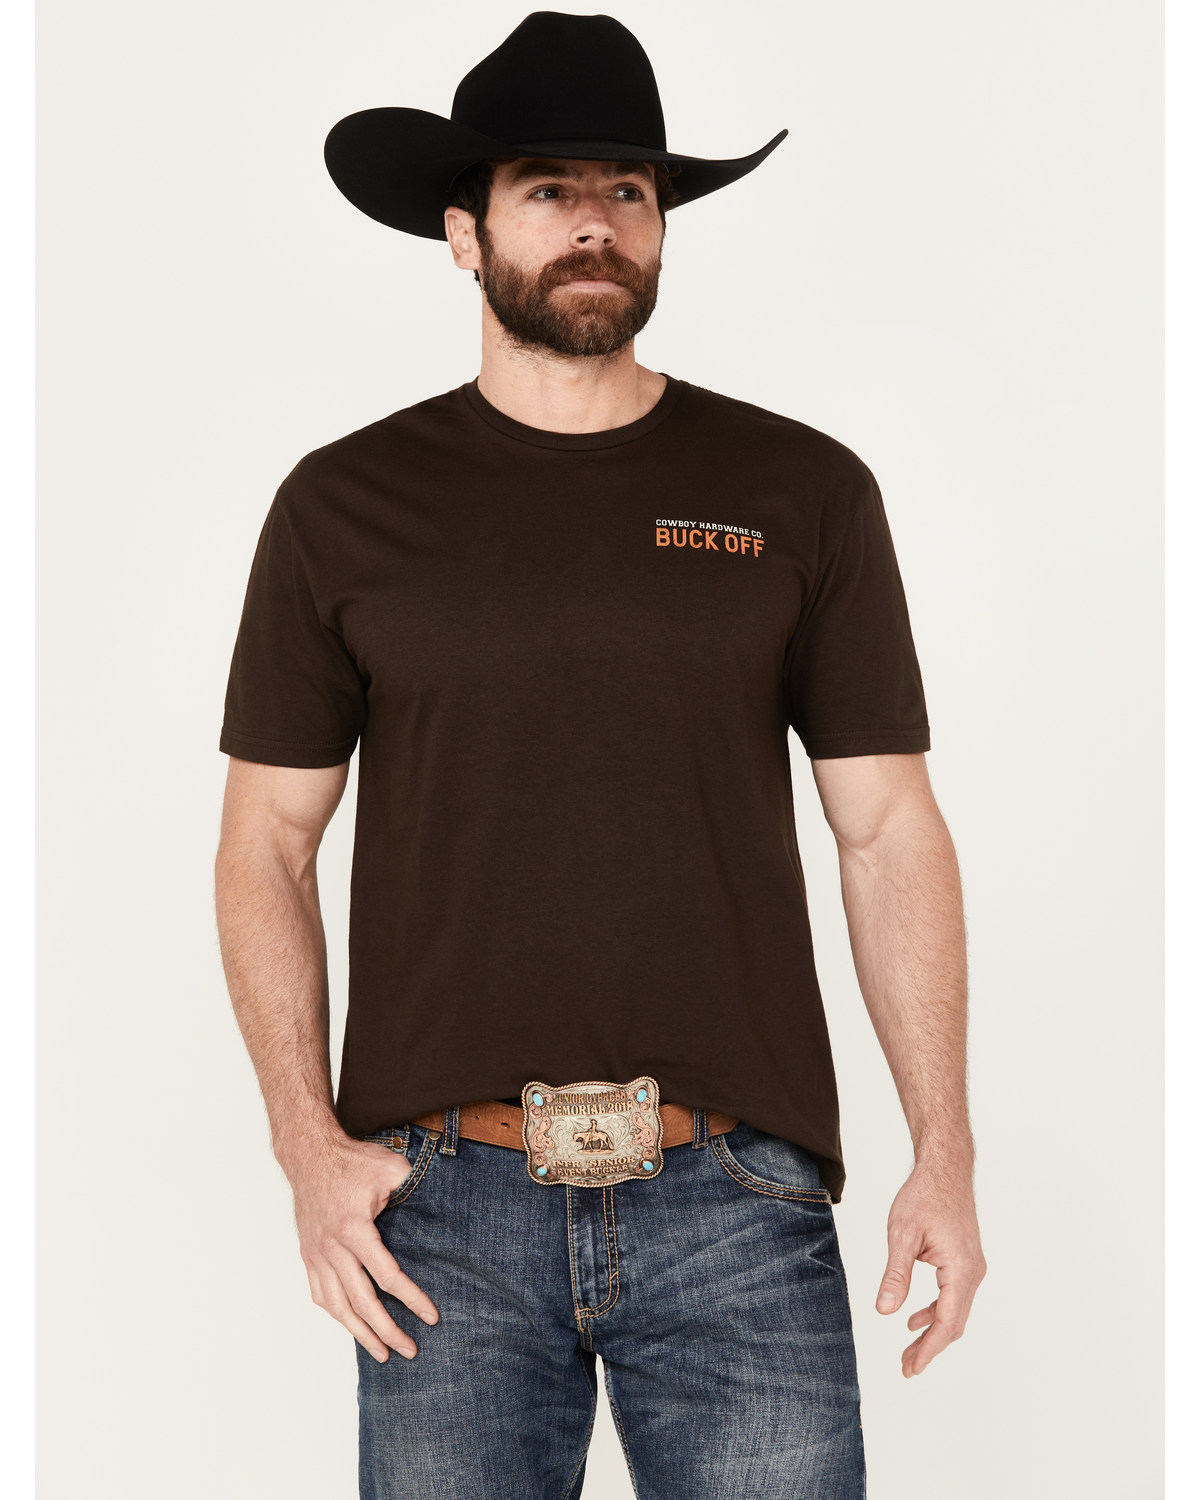 Cowboy Up Men's Buck Off Short Sleeve Graphic T-Shirt